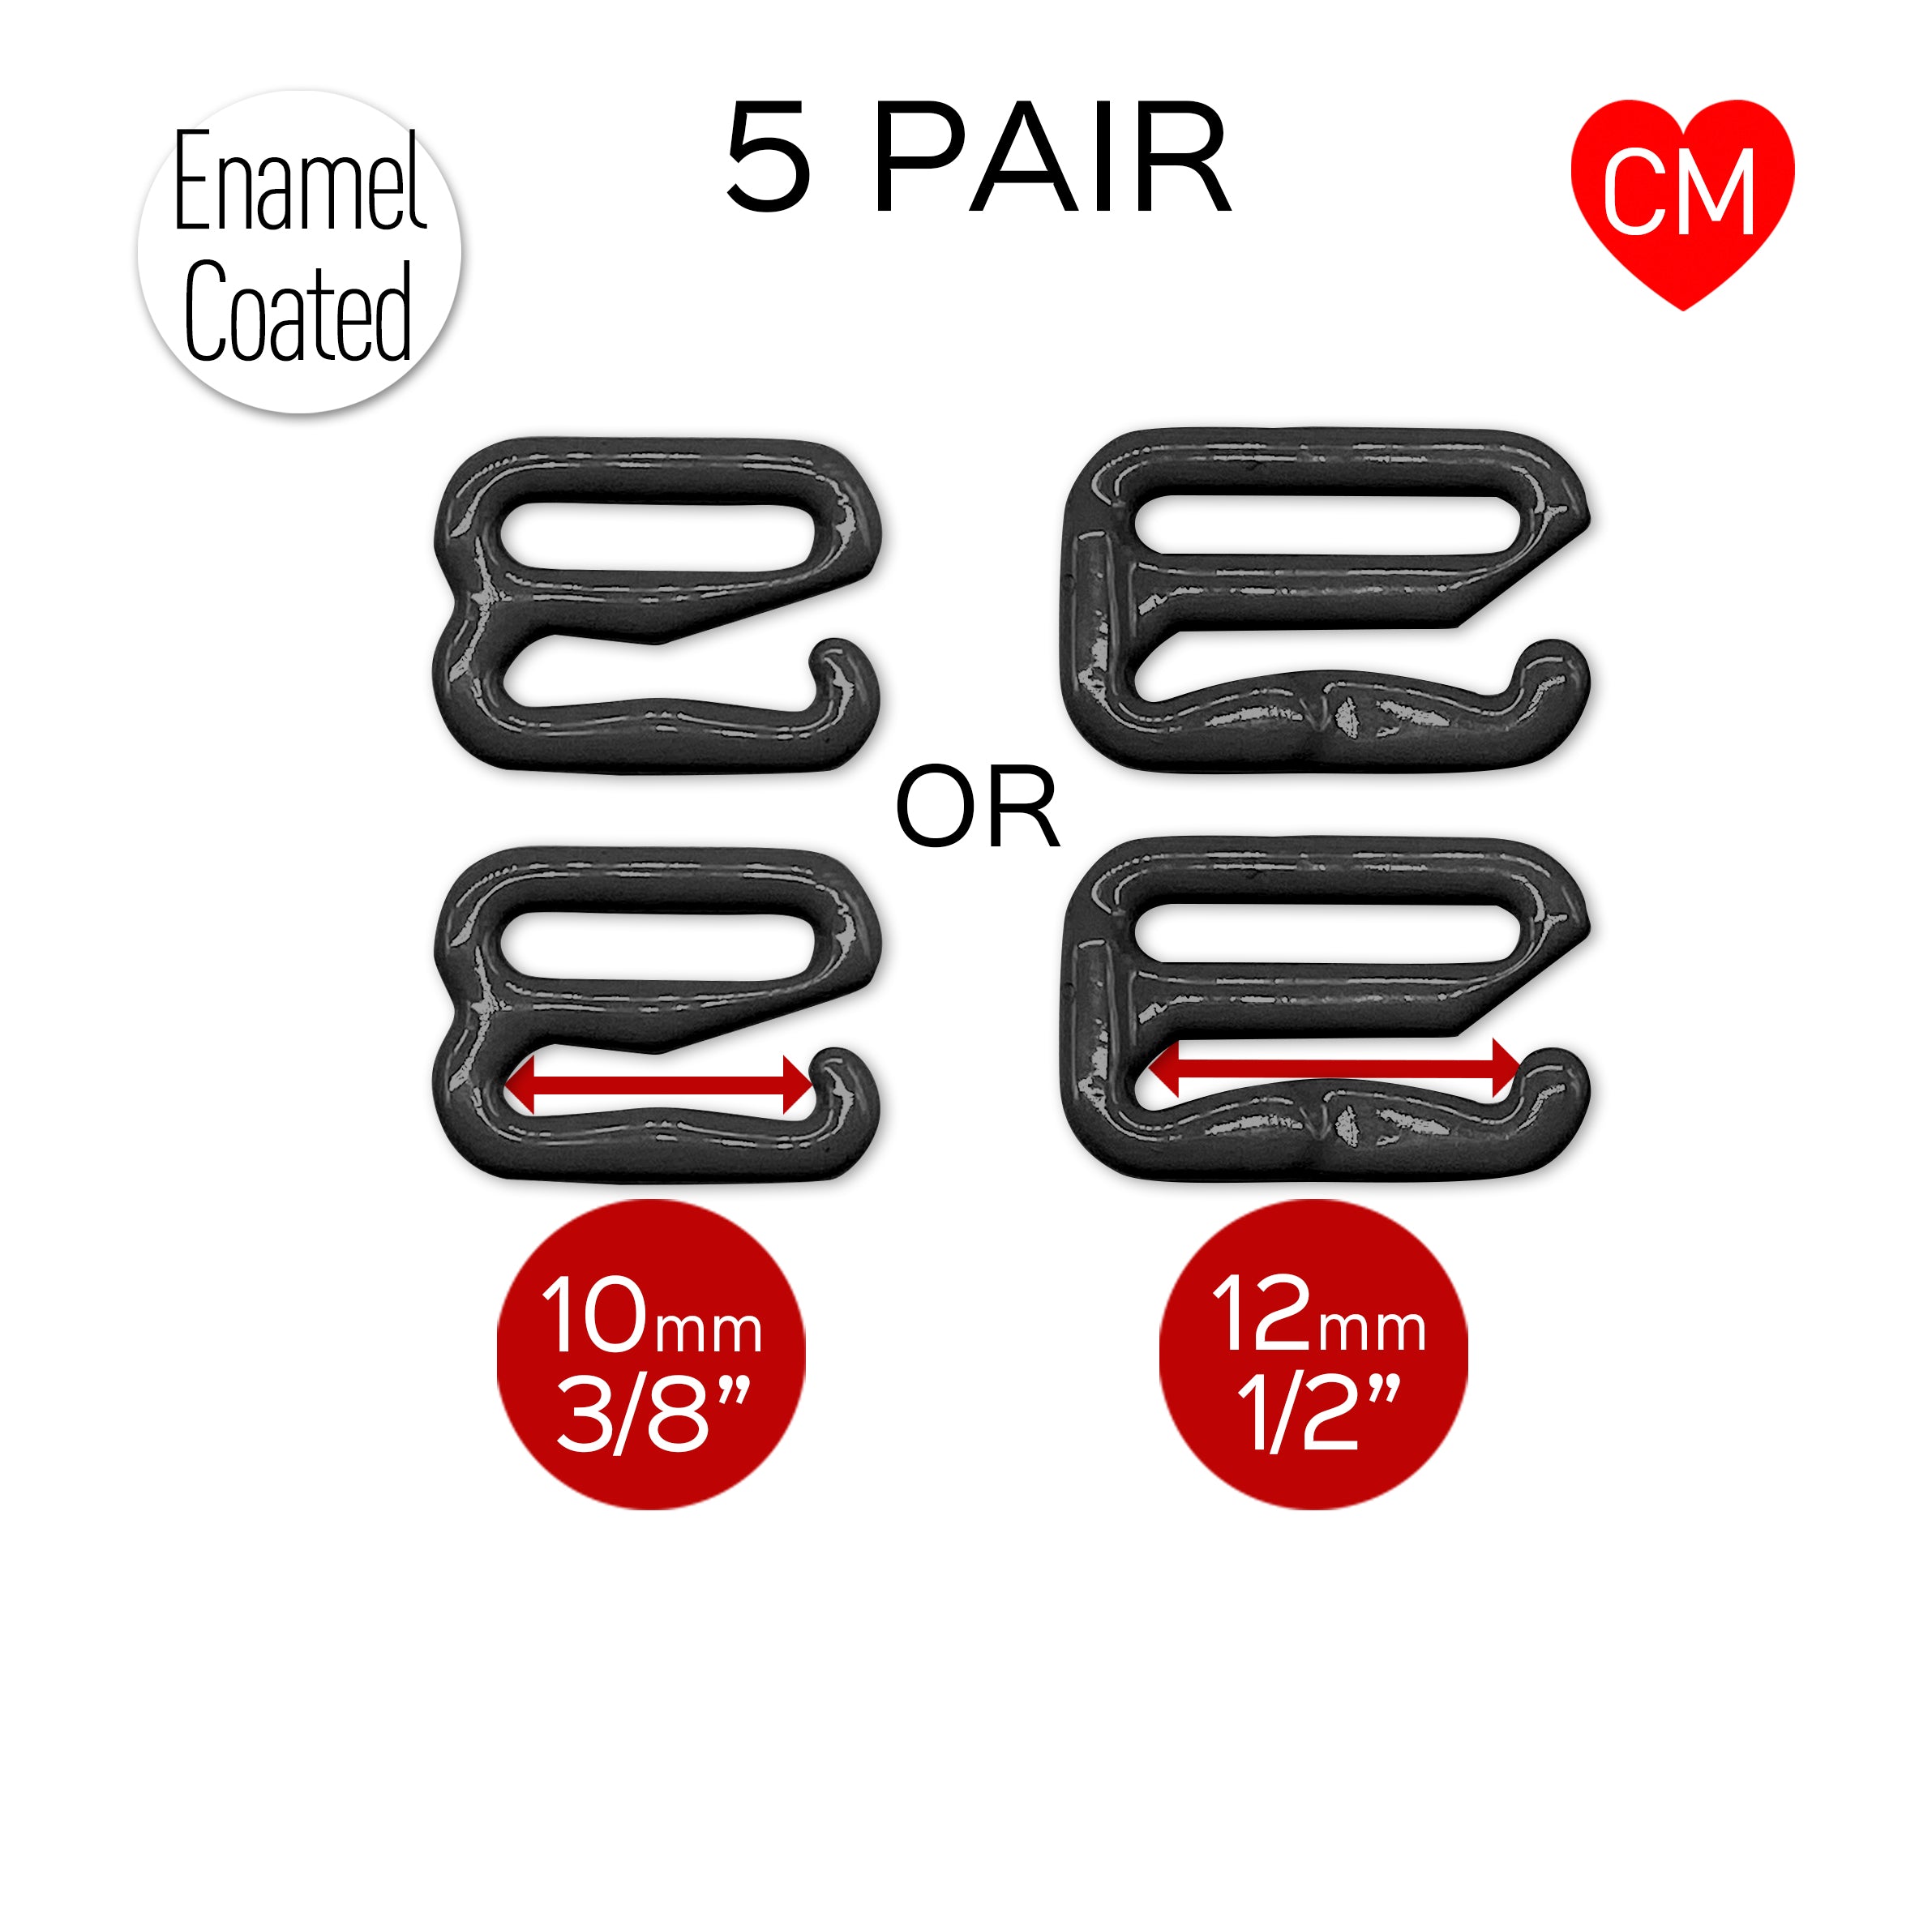 CLEARANCE- 5 Pair of Bra Strap Slider G Hooks in Enamel Coated Black for Swimwear or Bra making- 3/8" or 1/2"